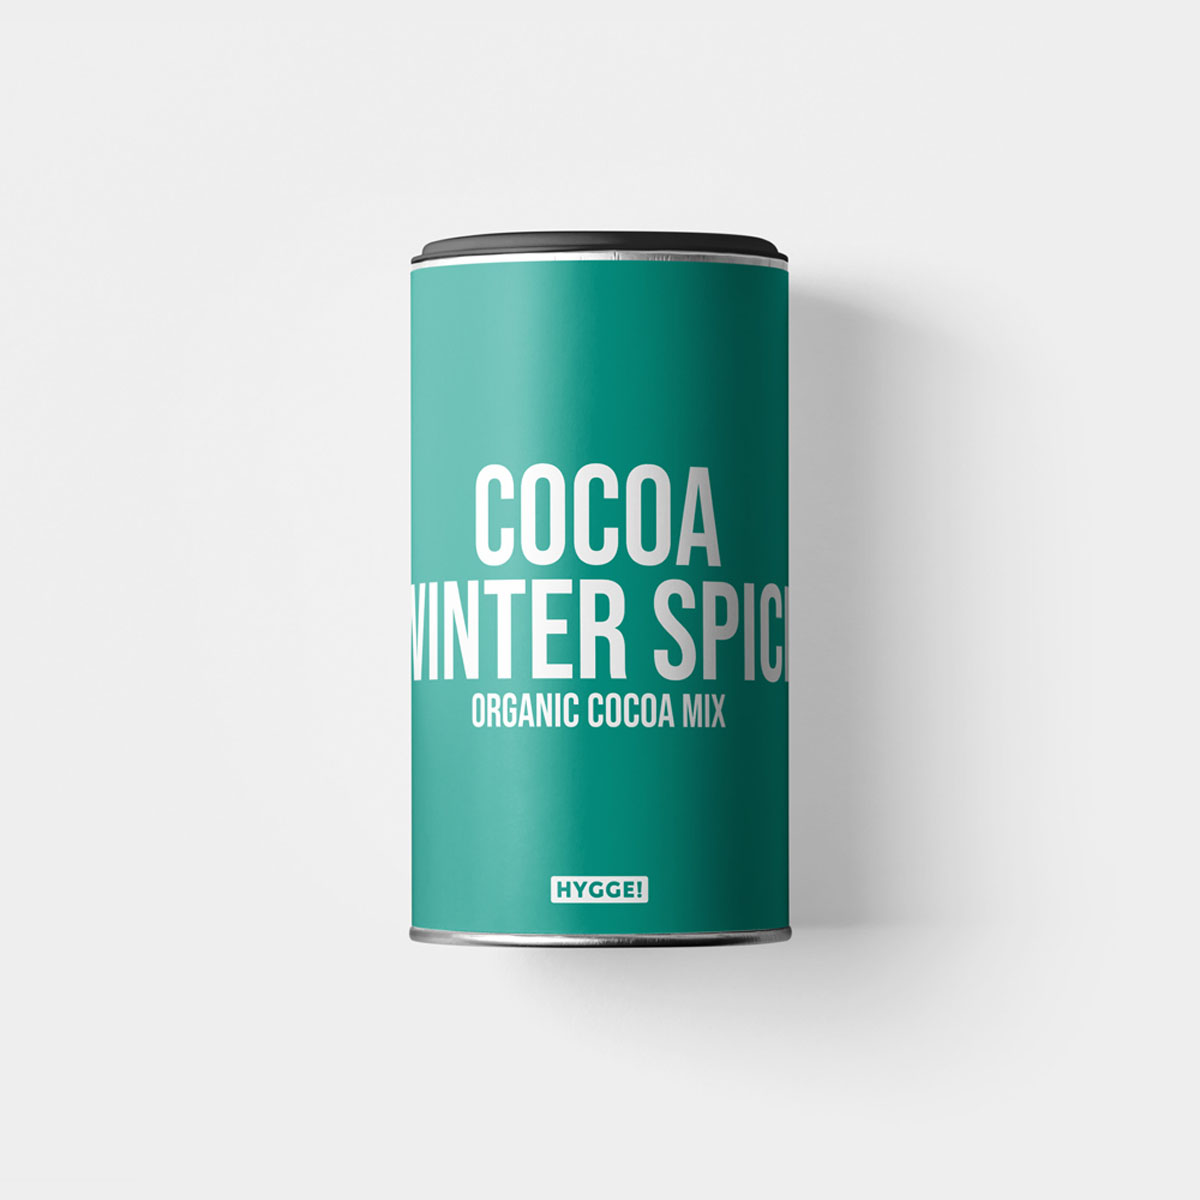 HYGGE Cocoa Winter Spice mit wärmenden exotischen Gewürzen. HYGGE Cocoa Winter Spice einfach in heisser Milch aufschäumen und geniessen! Auch gut mit Soja-, Mandel- oder Hafermilch. mit wärmenden exotischen Gewürzen.